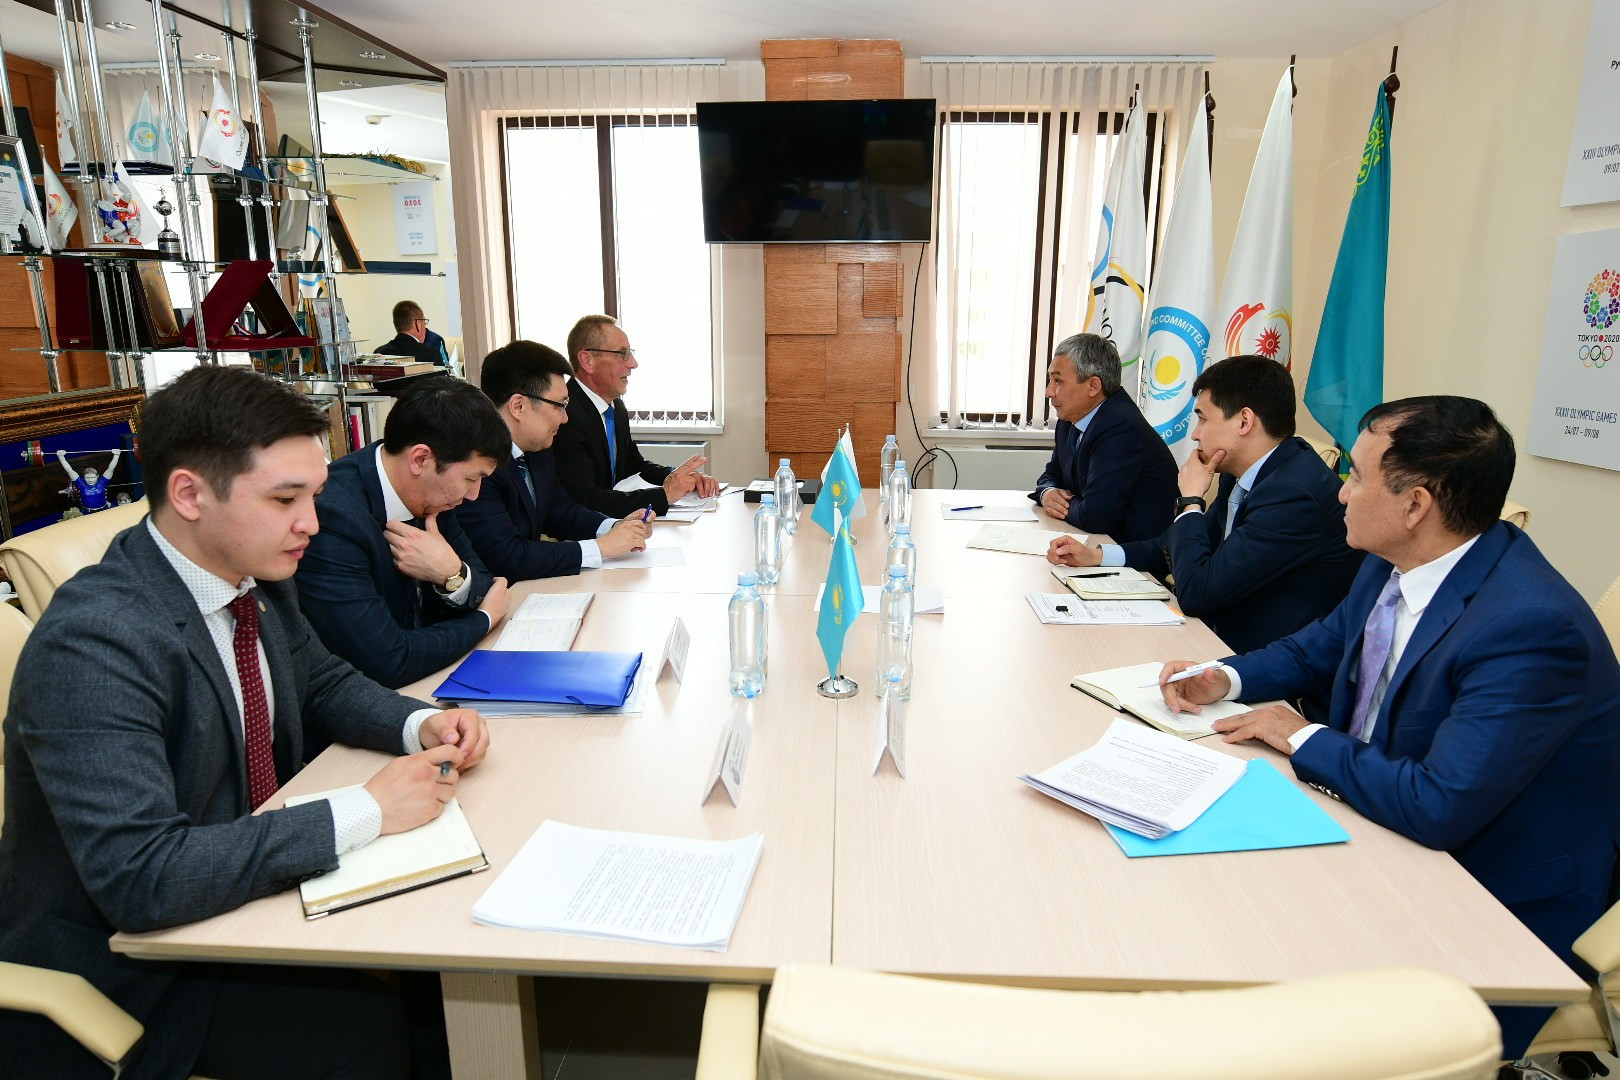 Вопросы развития гребли на байдарках и каноэ в Казахстане обсудили в Нур-Султане  